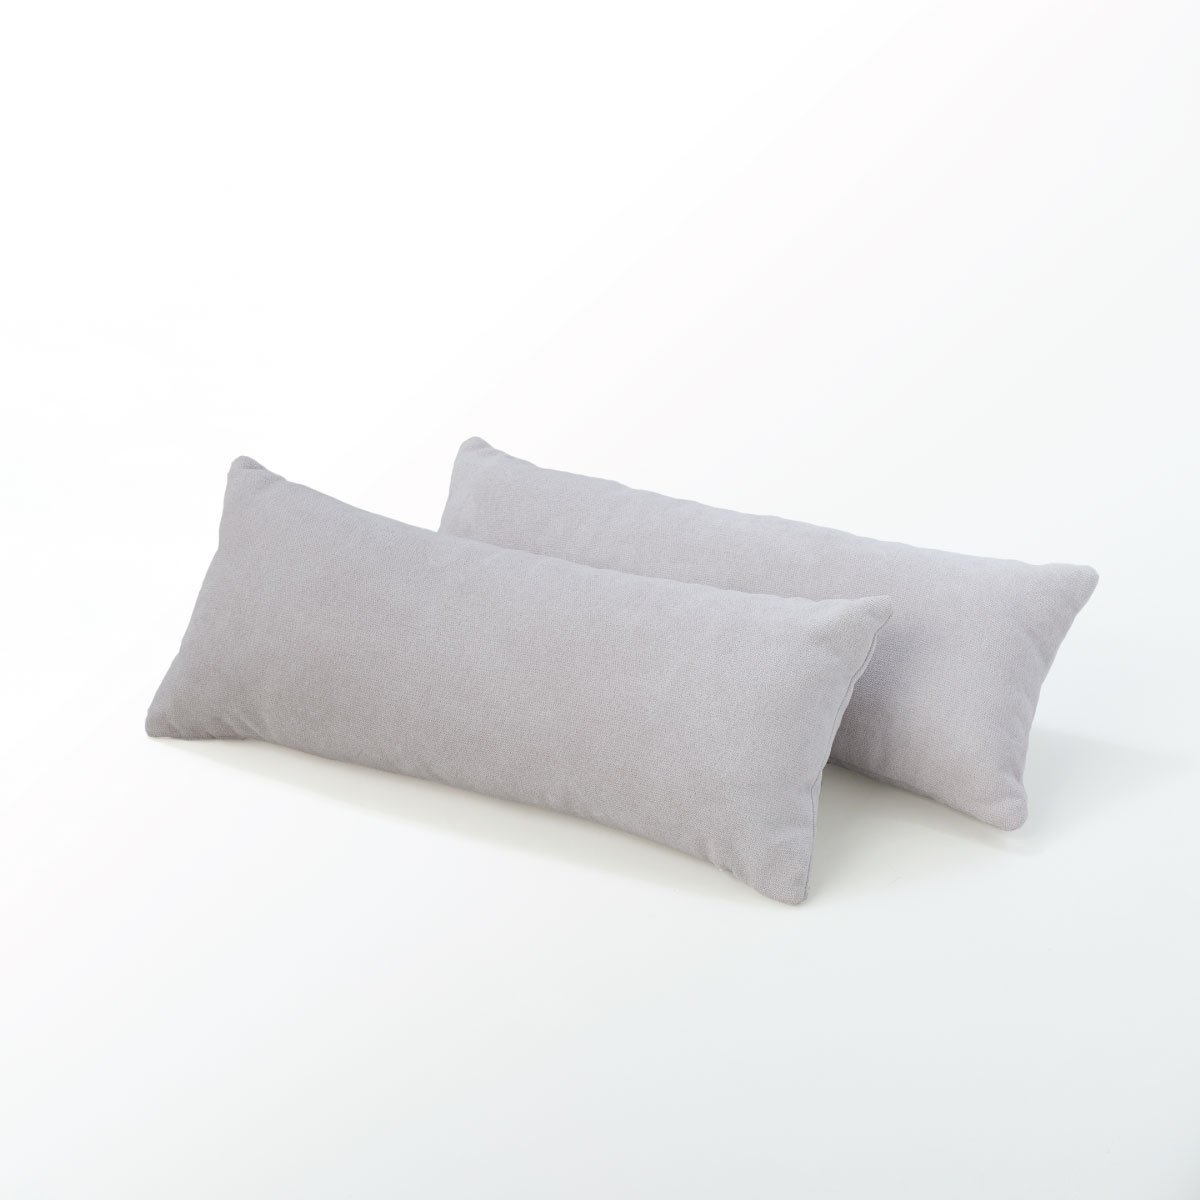 DC305 Cane Rectangular Pillow